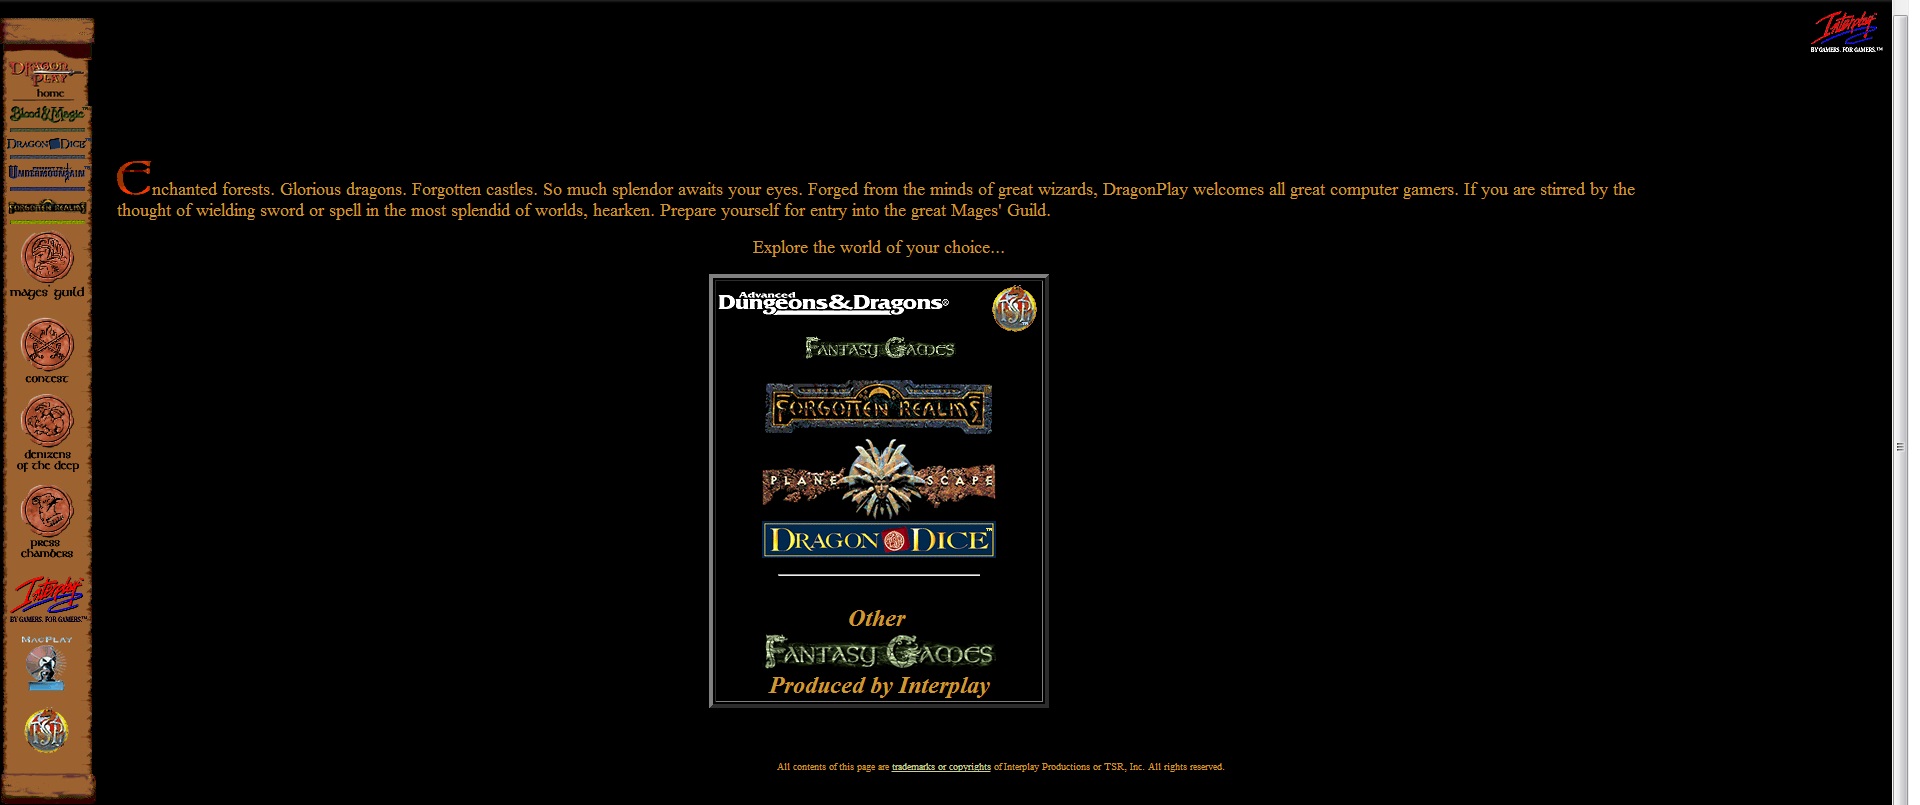 Страничка Dragonplay 1997 года. В левом верхнем углу можно разглядеть логотип несостоявшегося подразделения.